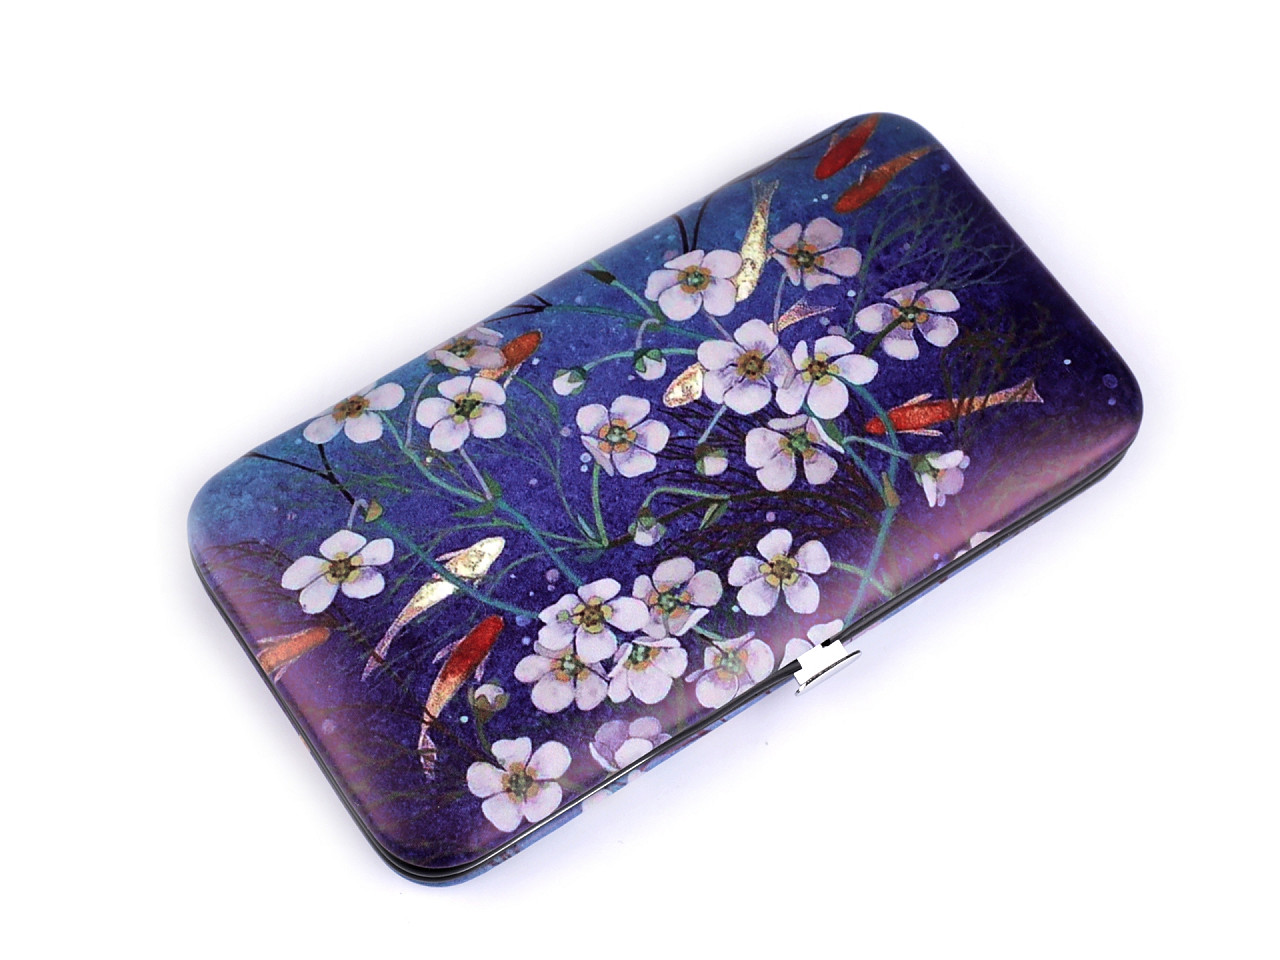 Maniküre-Set mit Blumenmuster, blau-violett, 1 Stk.